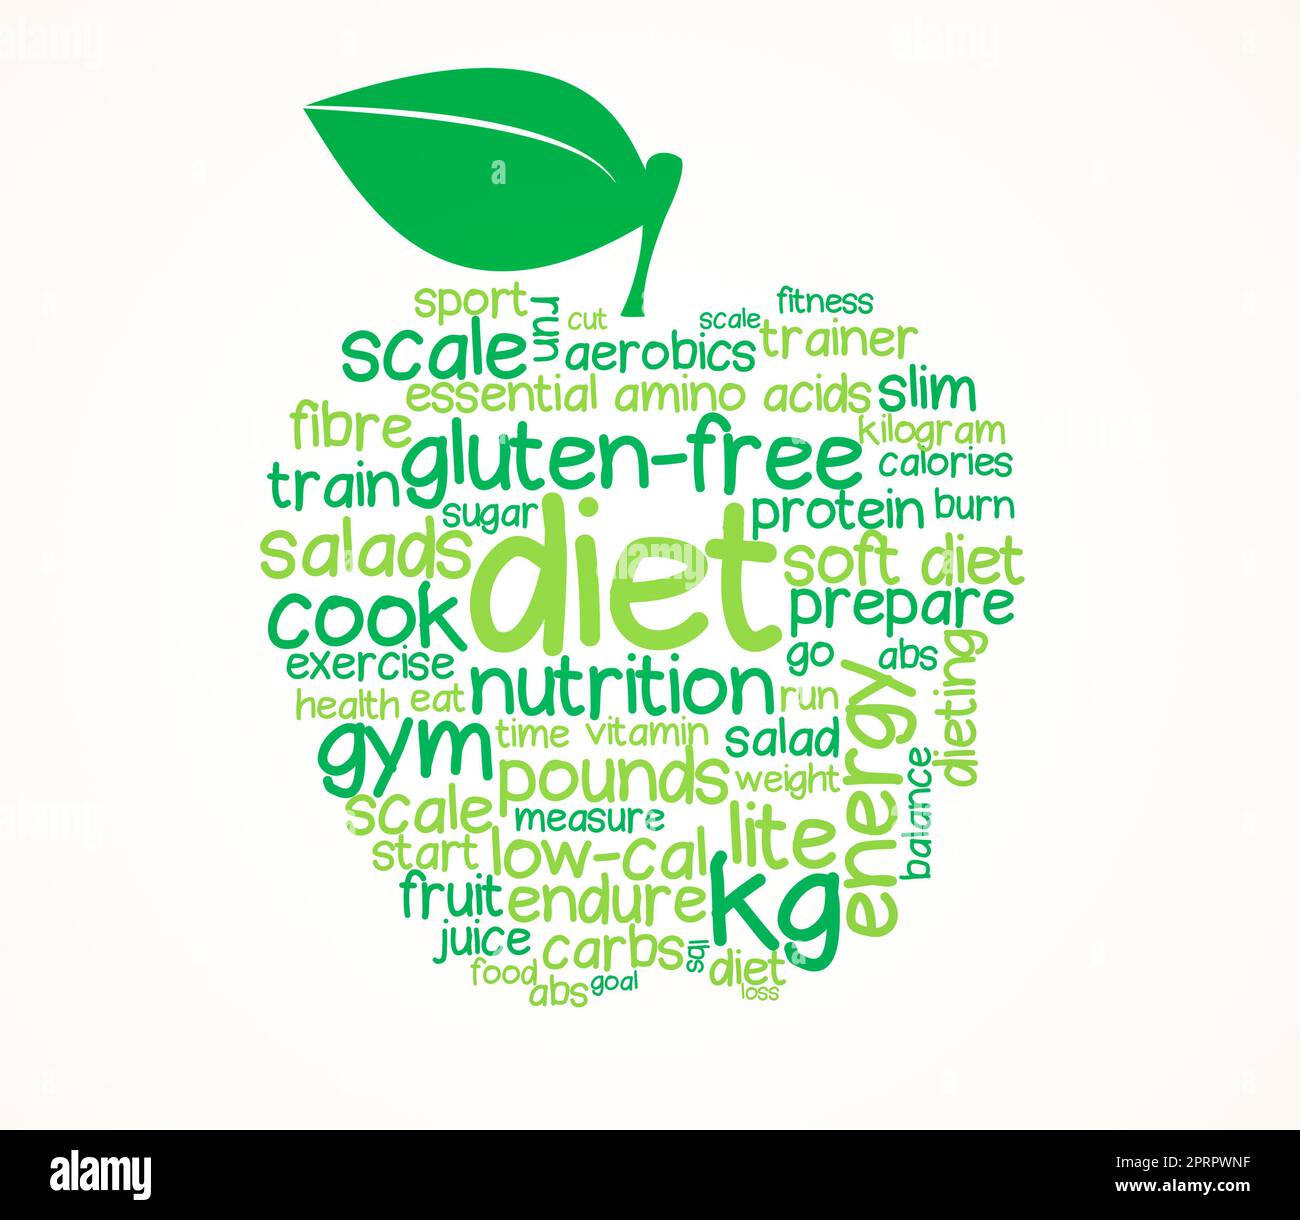 Essen Sie gesund. Eine grafische Darstellung eines Apfels aus Wörtern, die mit einer gesunden Ernährung in Verbindung stehen. Stockfoto